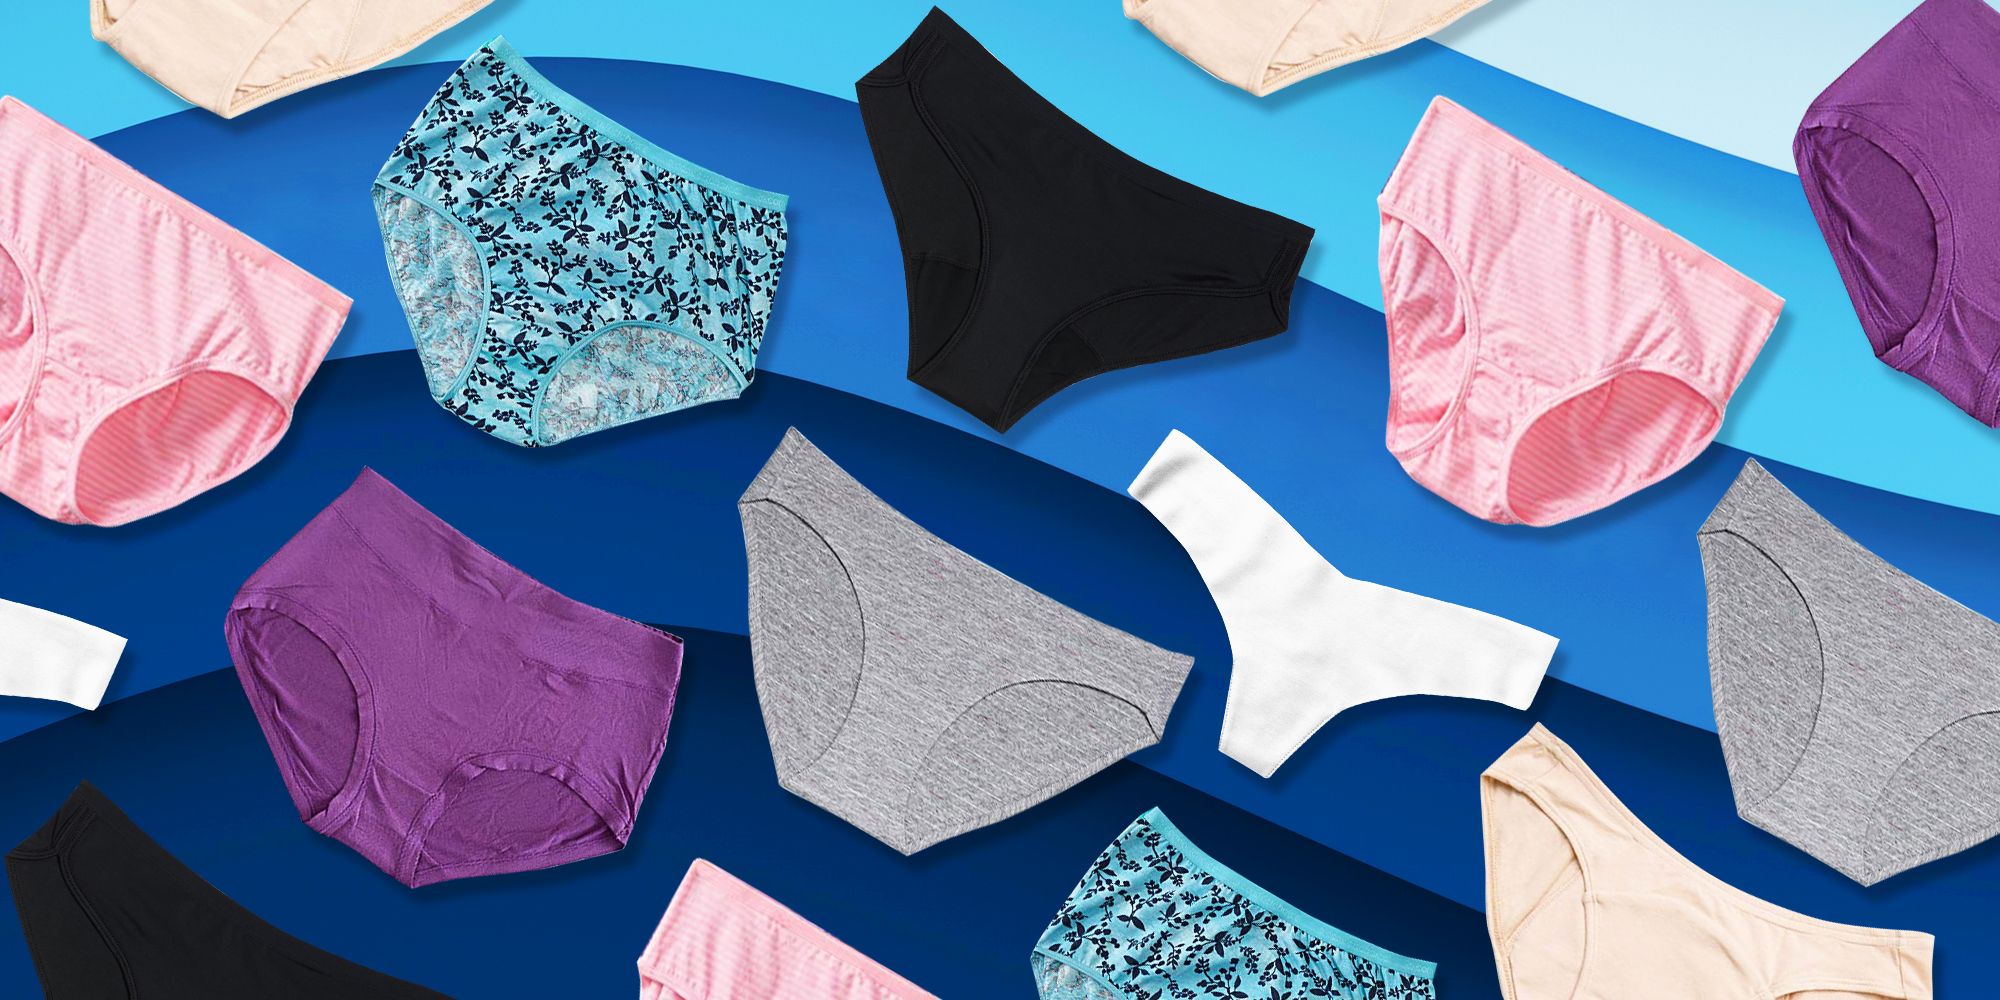 Best sweat-busting underwear for women